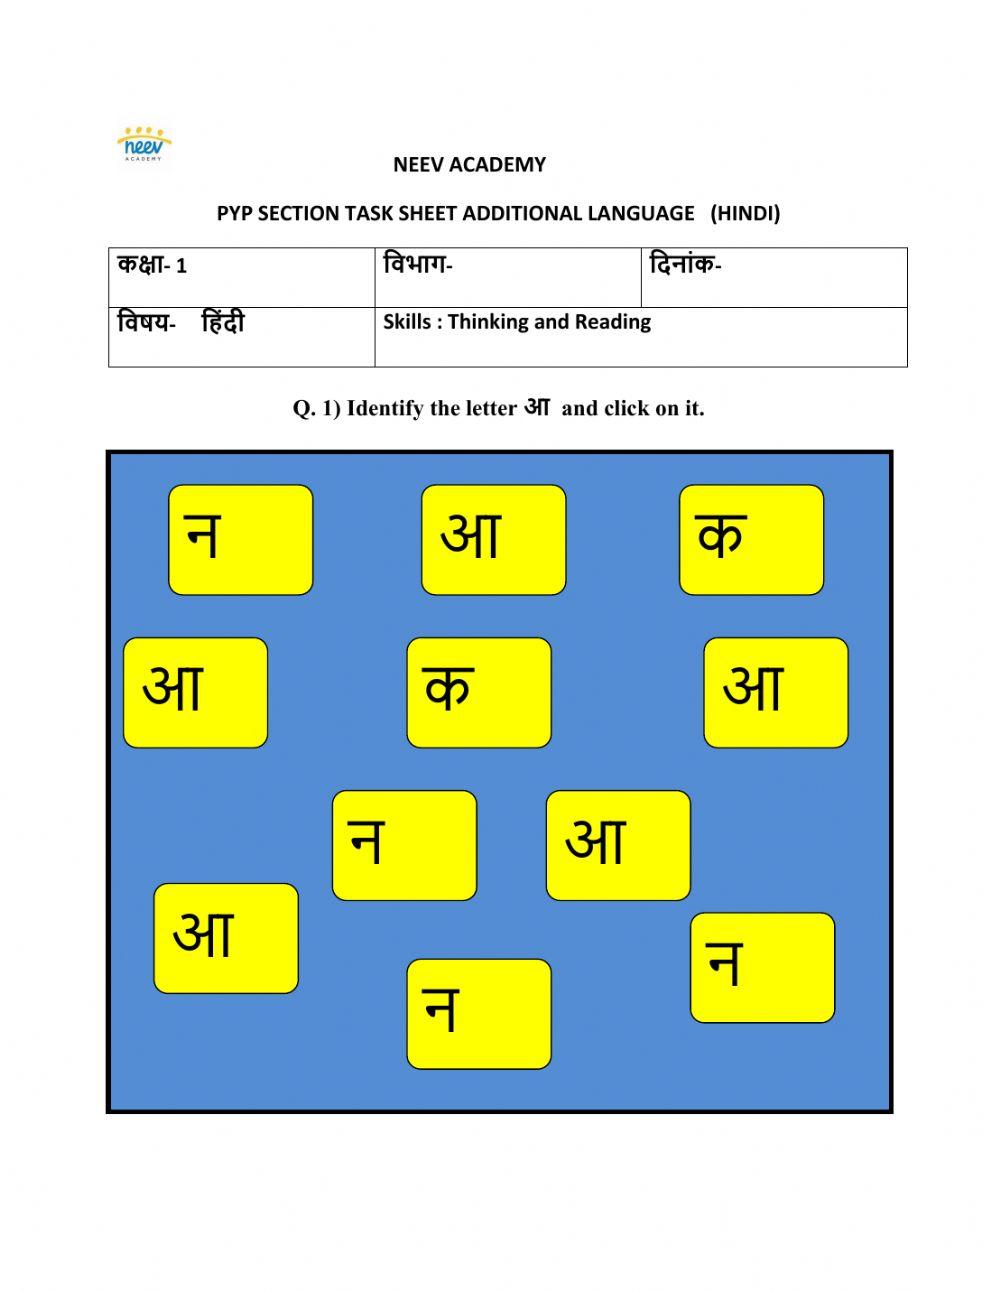 Hindi letter AA